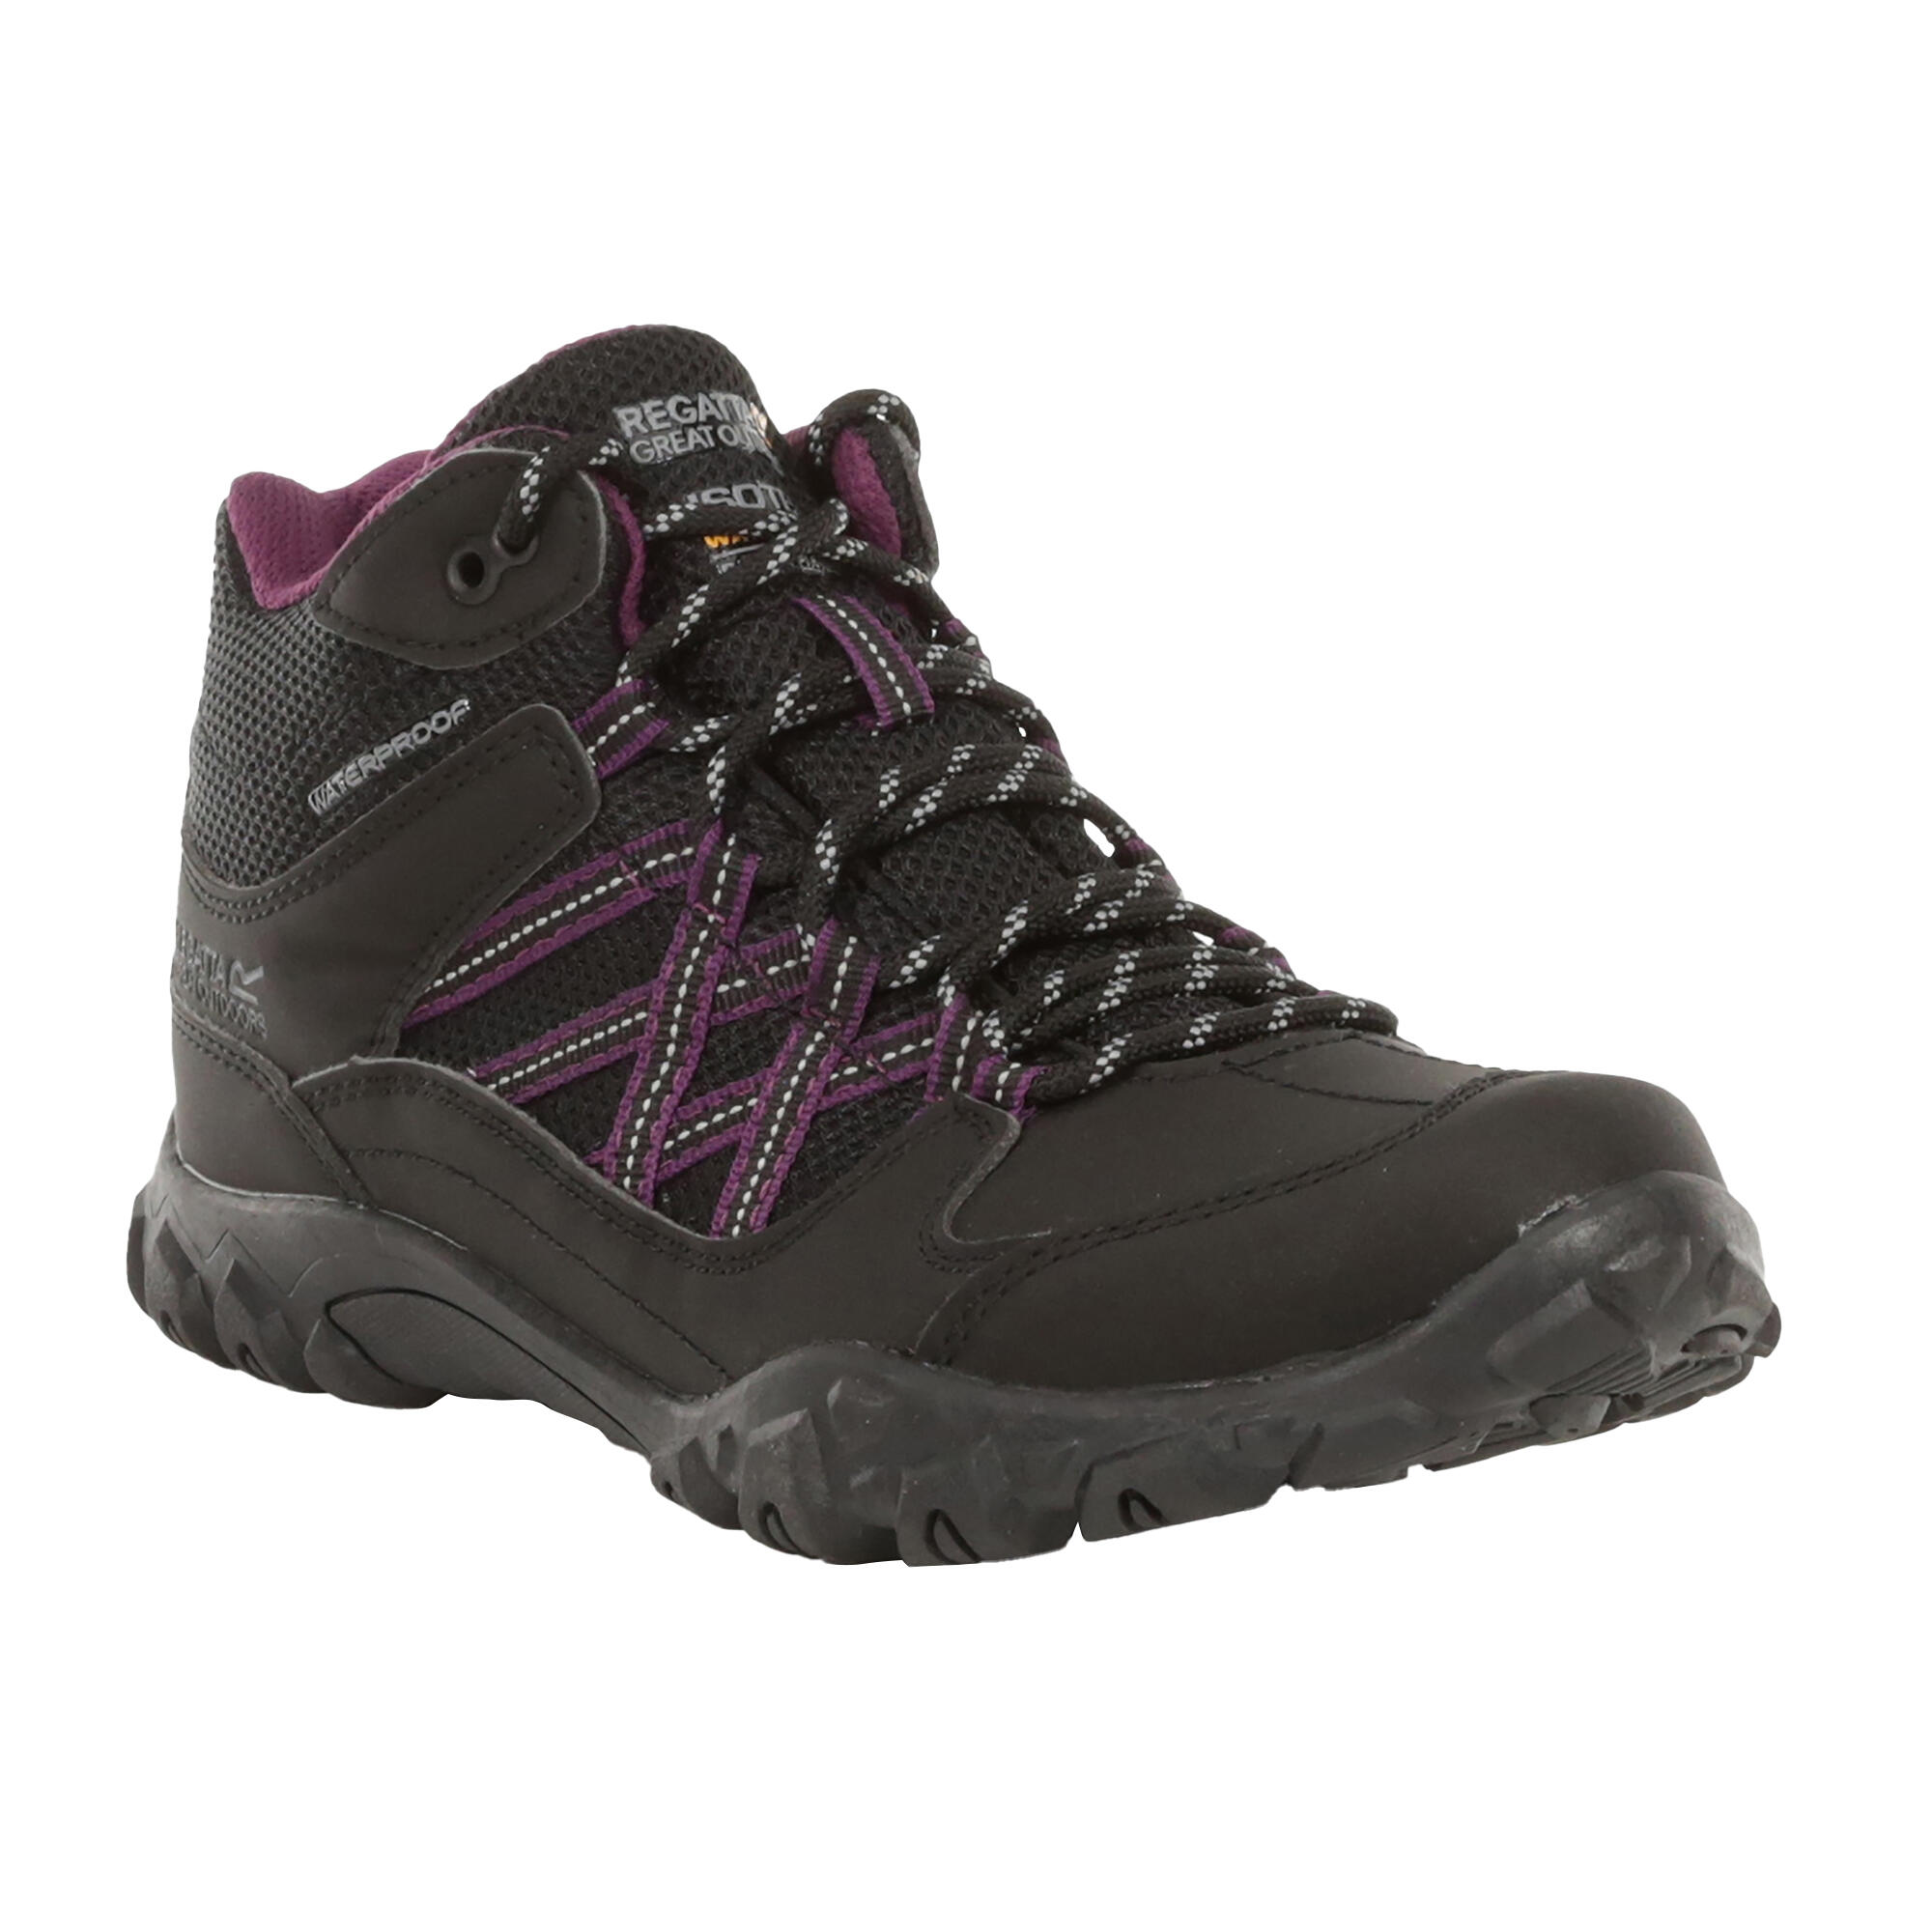 REGATTA Womens/Ladies Edgepoint Waterproof Walking Boots (Black/Prune)